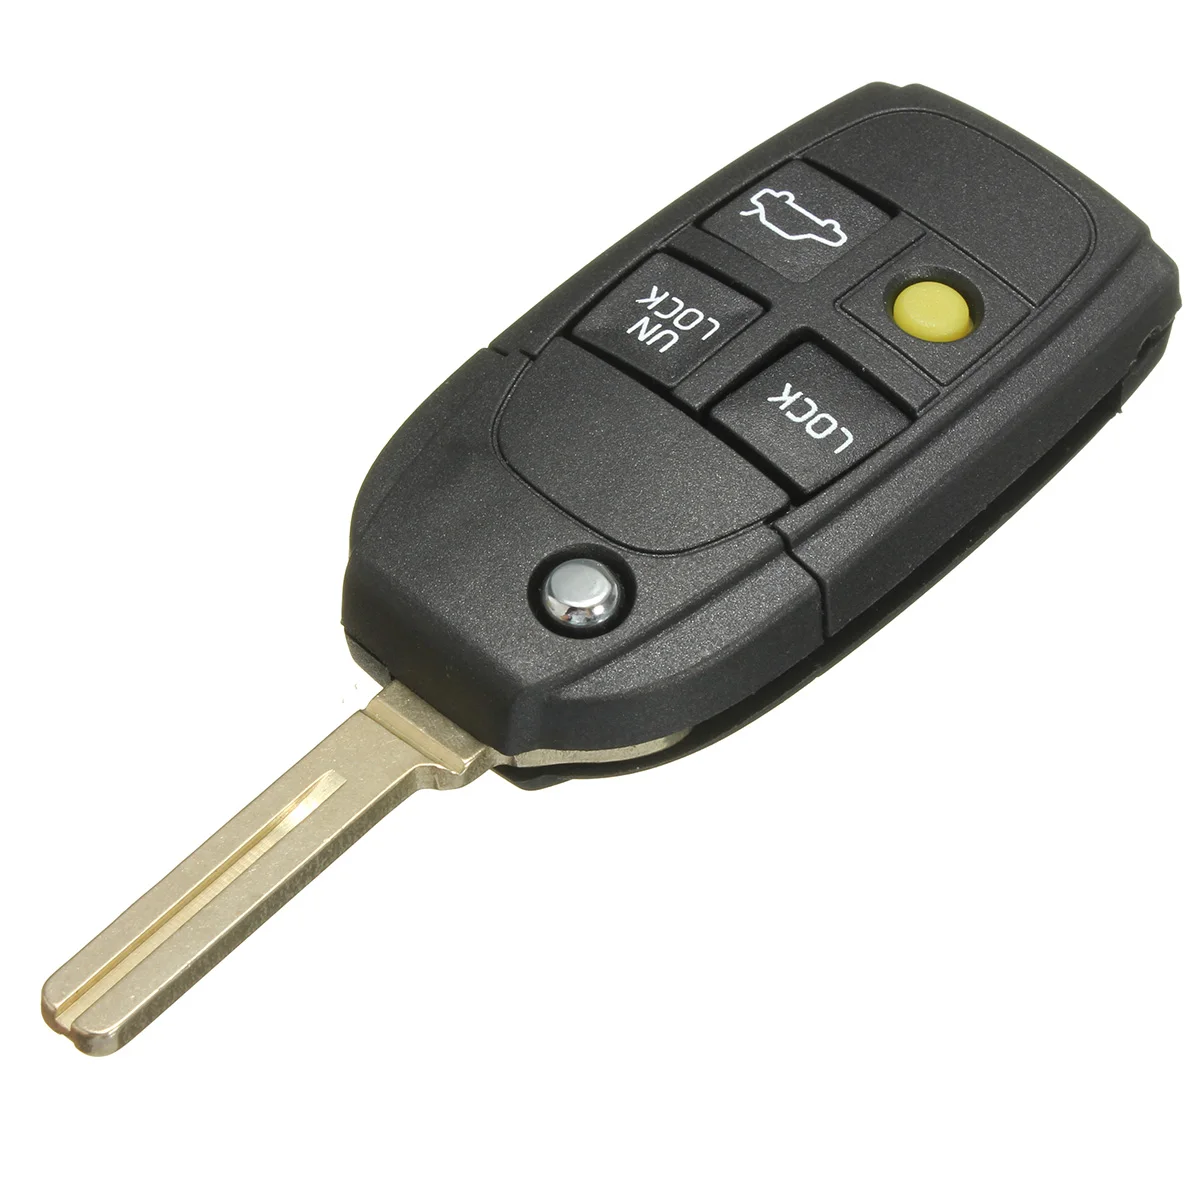 Автомобиль дистанционного ключа оболочки корпуса модифицированный ключ 2 3 4 кнопки для Volvo XC70 XC90 V40 V50 V70 V90 C30 C70 S40 S60 S70 S80 - Цвет: 4 buttons B